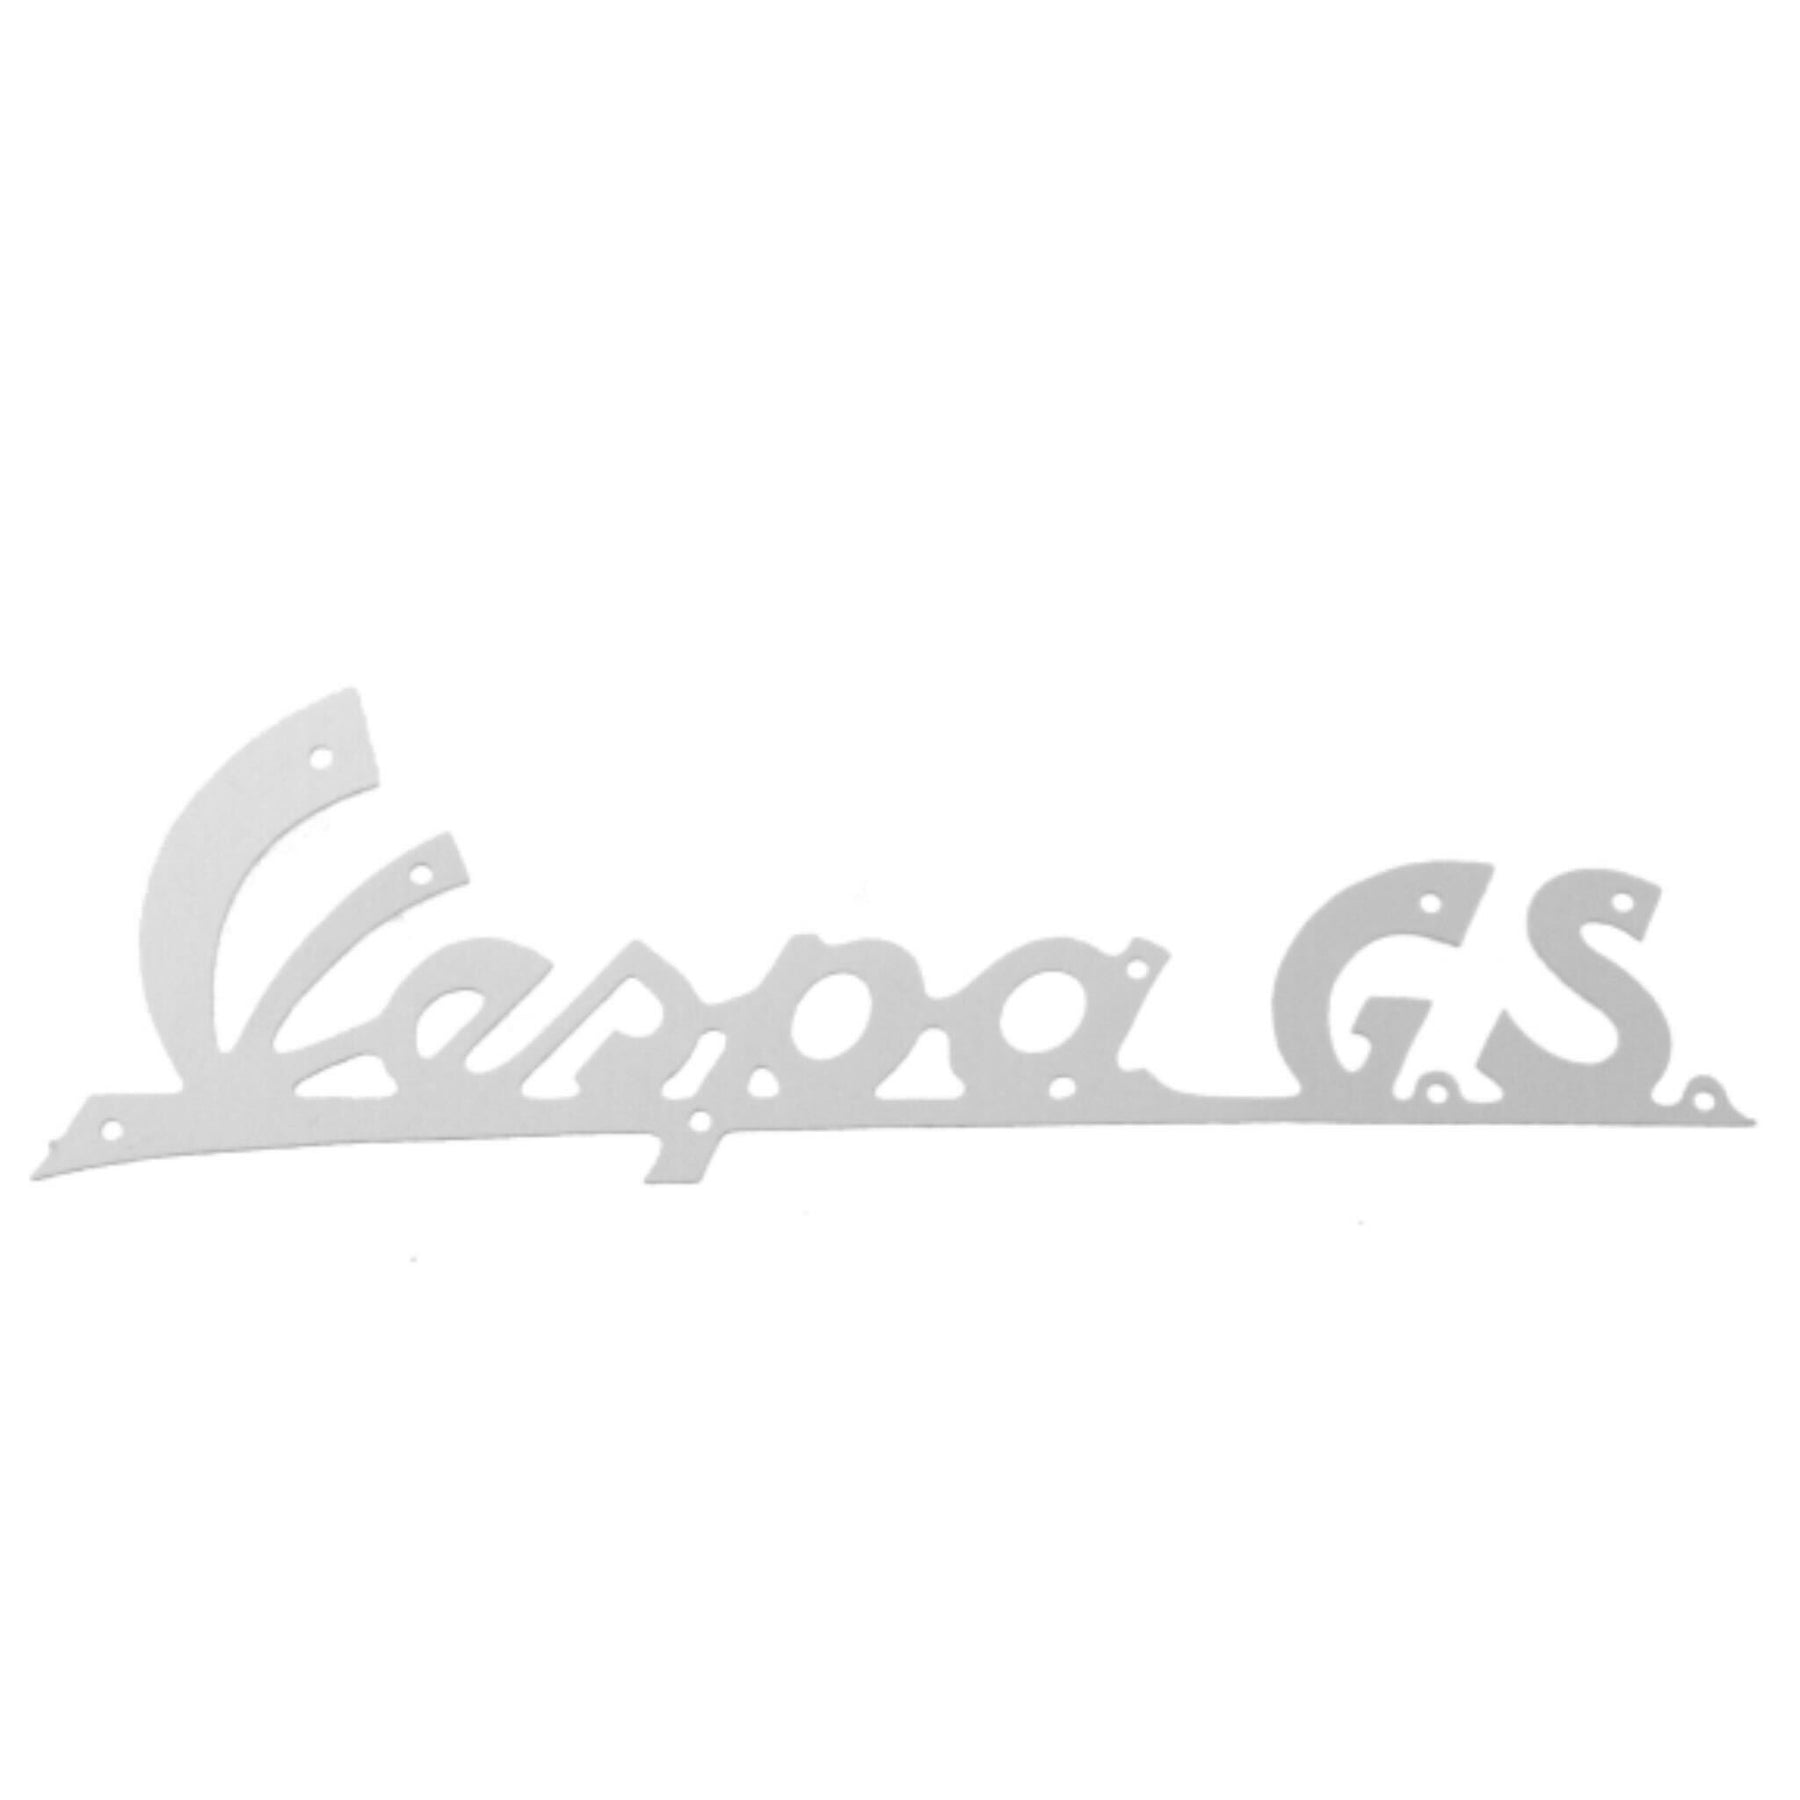 Vespa GS 150 VS1/2/3/4/5 Legshield Badge - Thin Metal 142mm Long